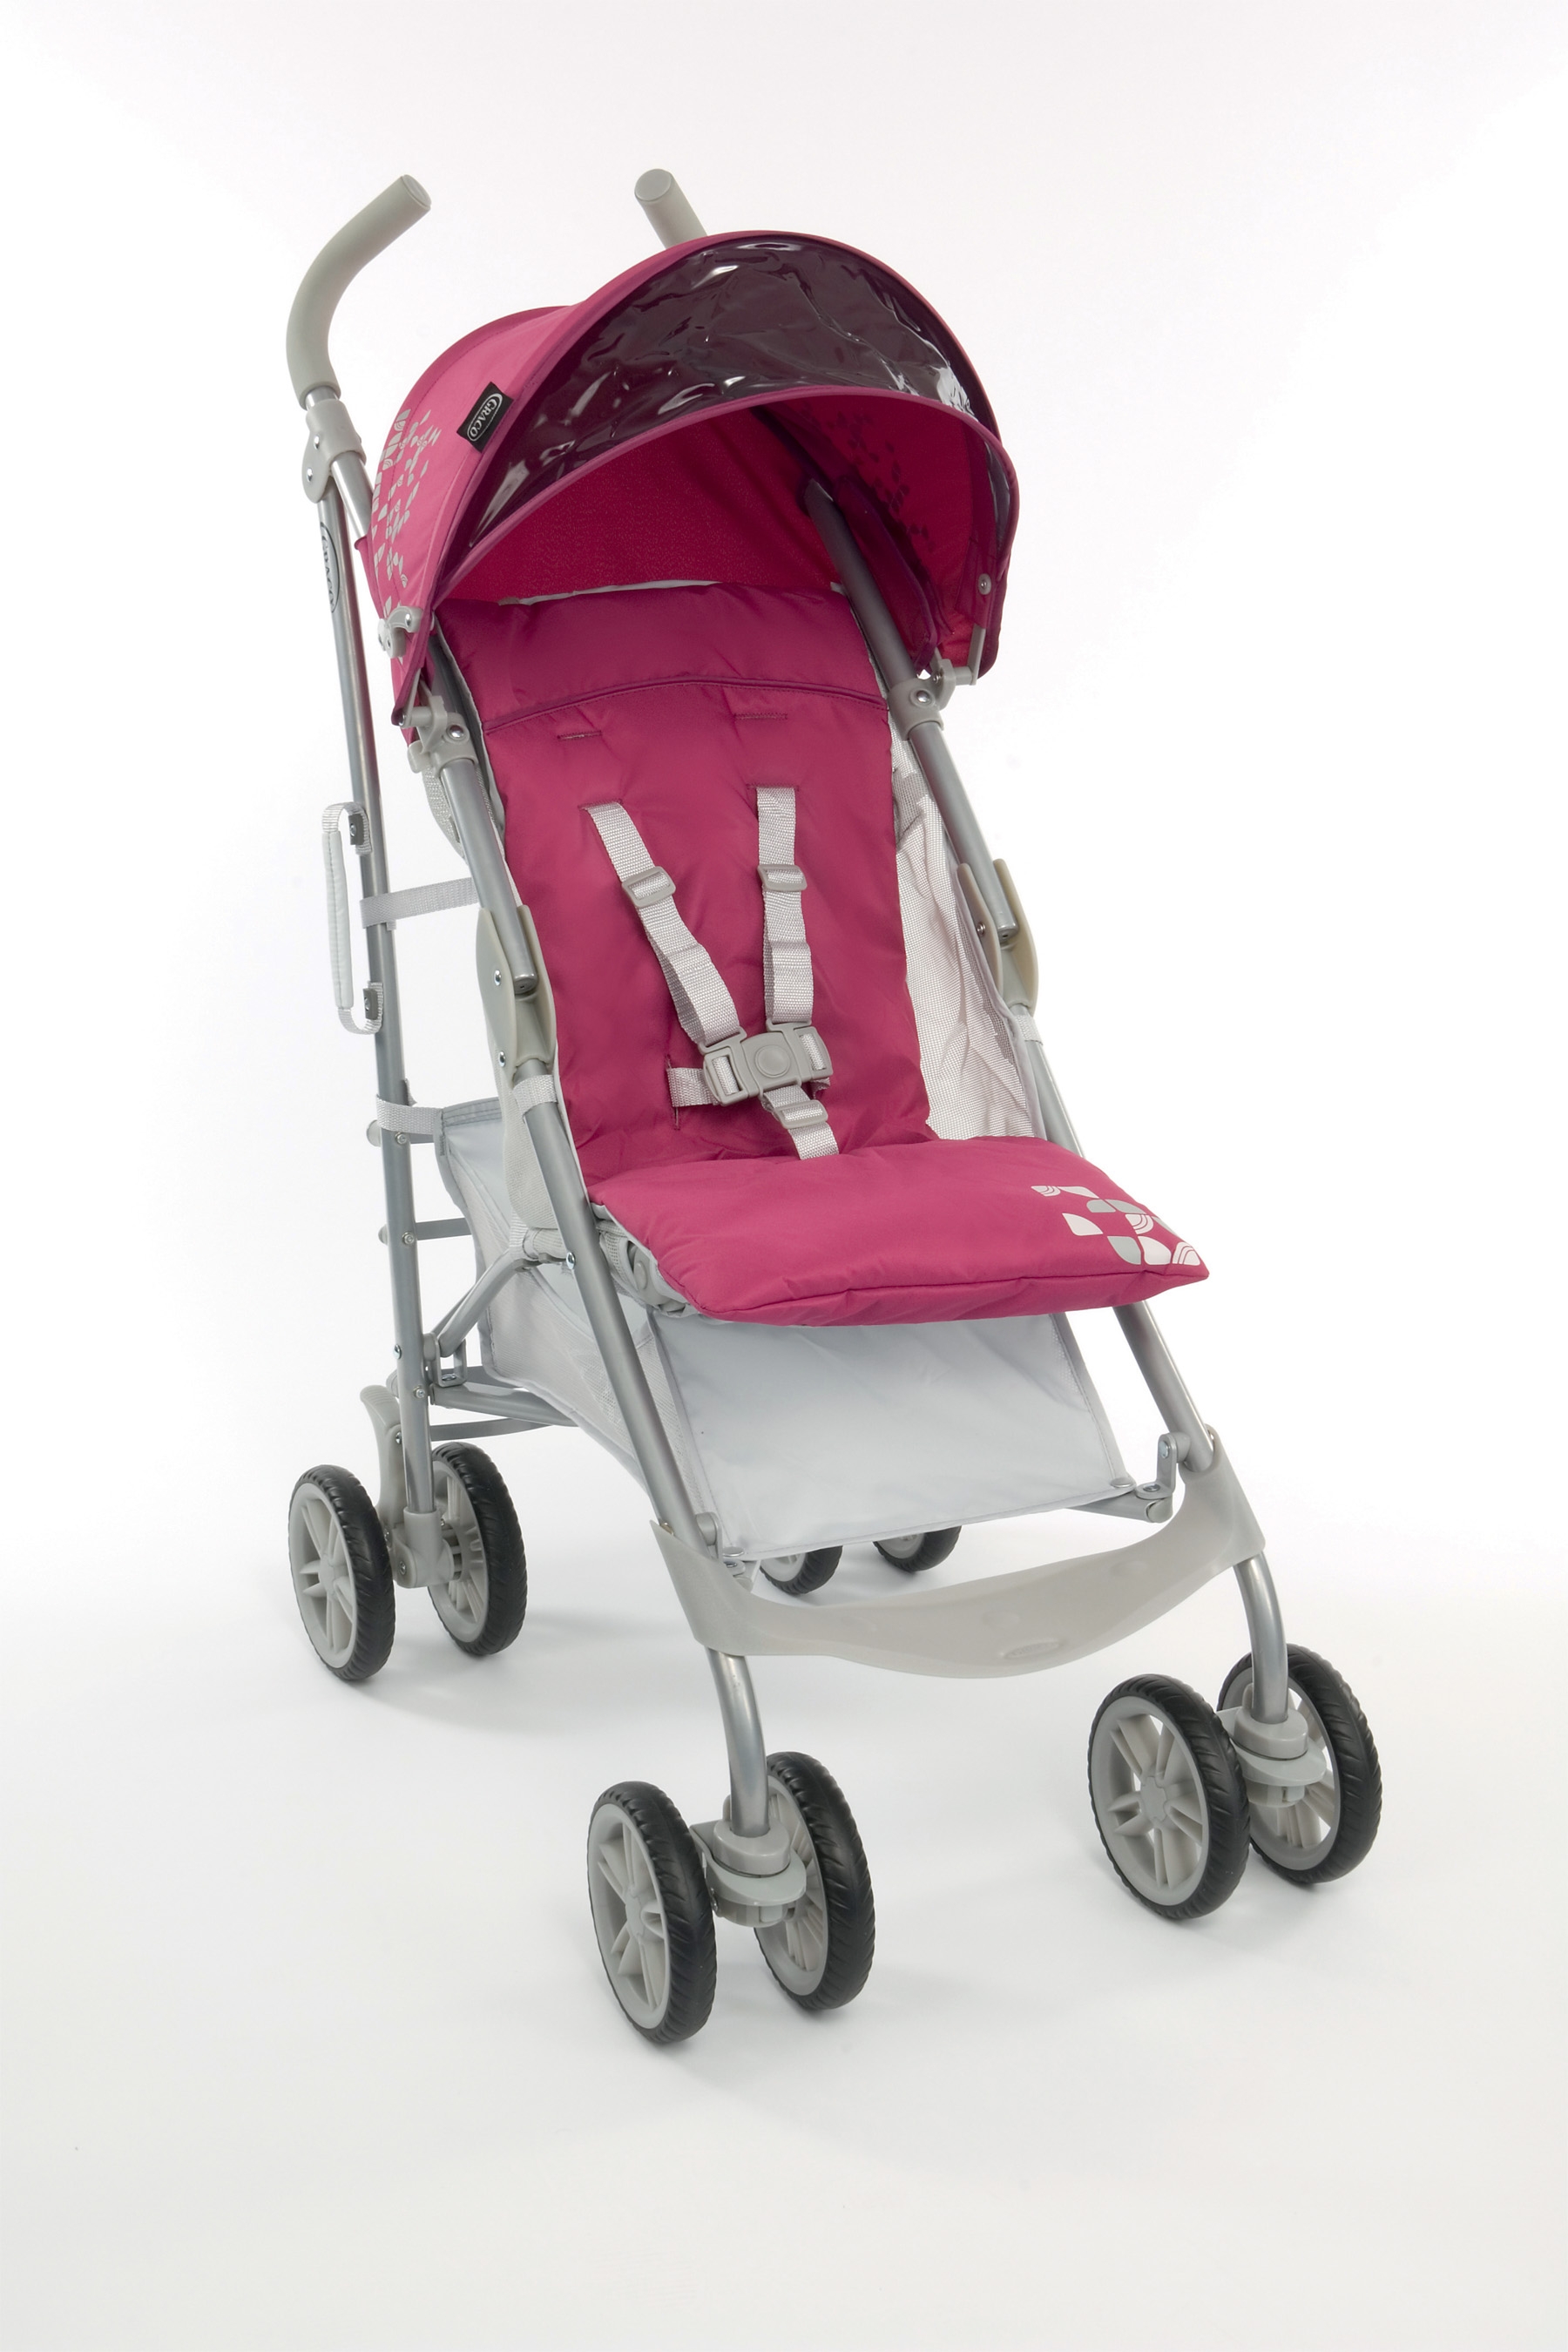 Graco Nimbly Baby Stroller Multicolor